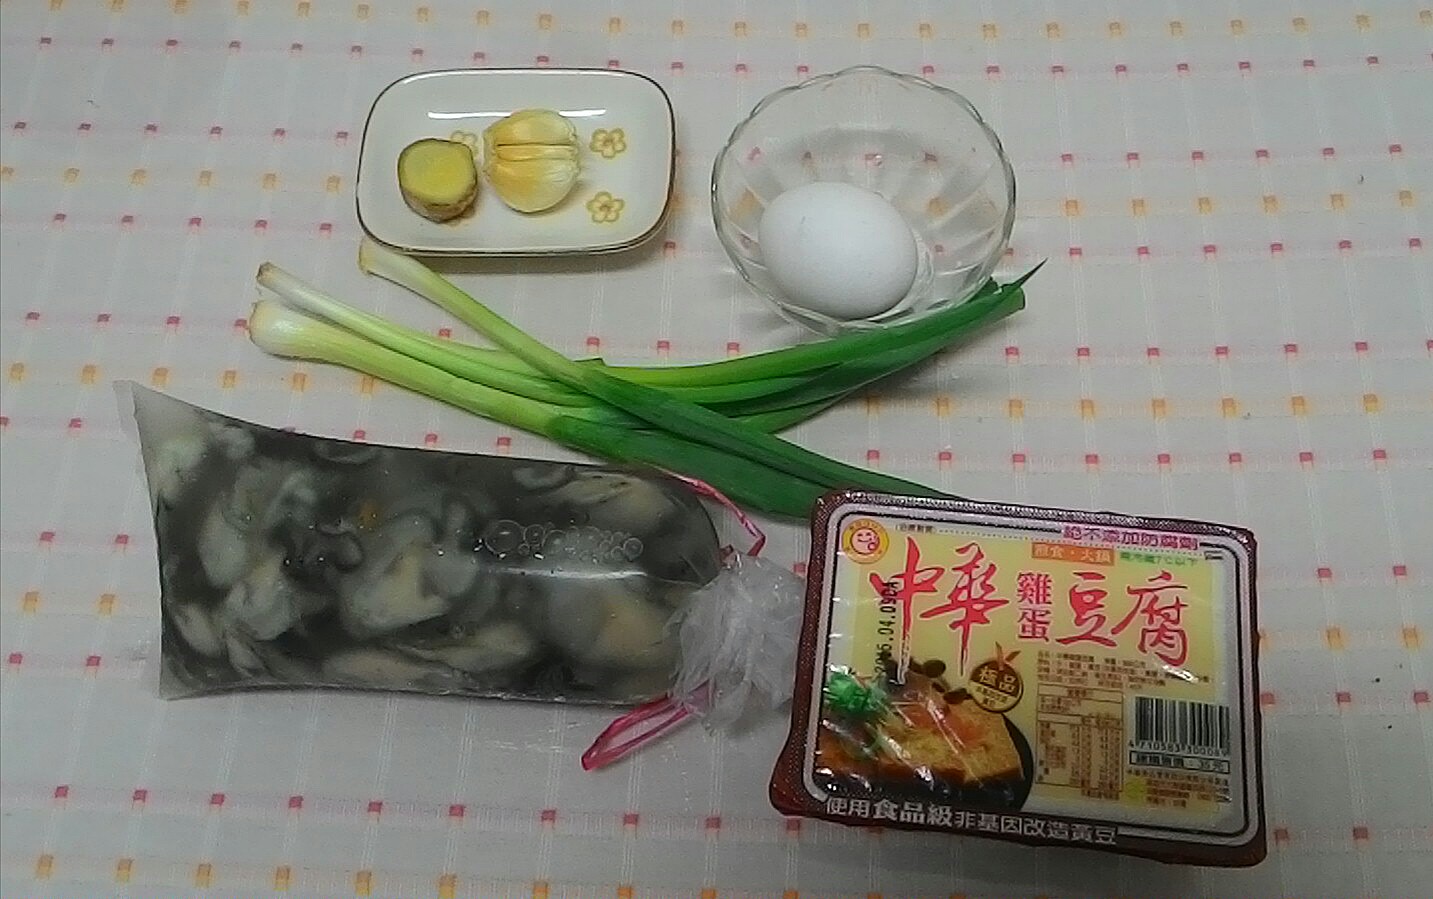 「鮮蚵豆腐煲」的食材一般超市都買得到。